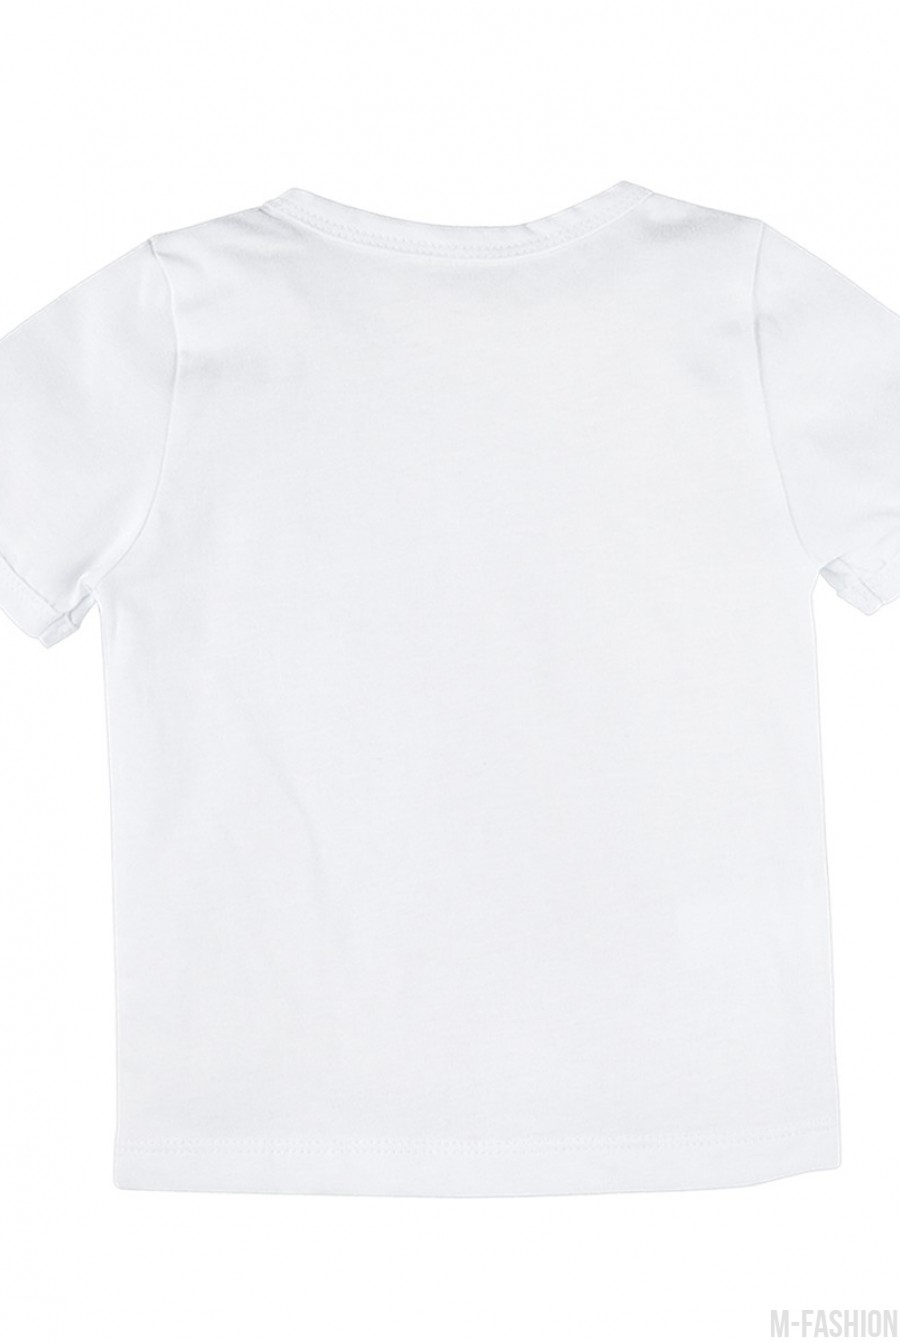 Трикотажная футболка с возможностью индивидуальной печати цифры (1-6) на принте- Фото 5